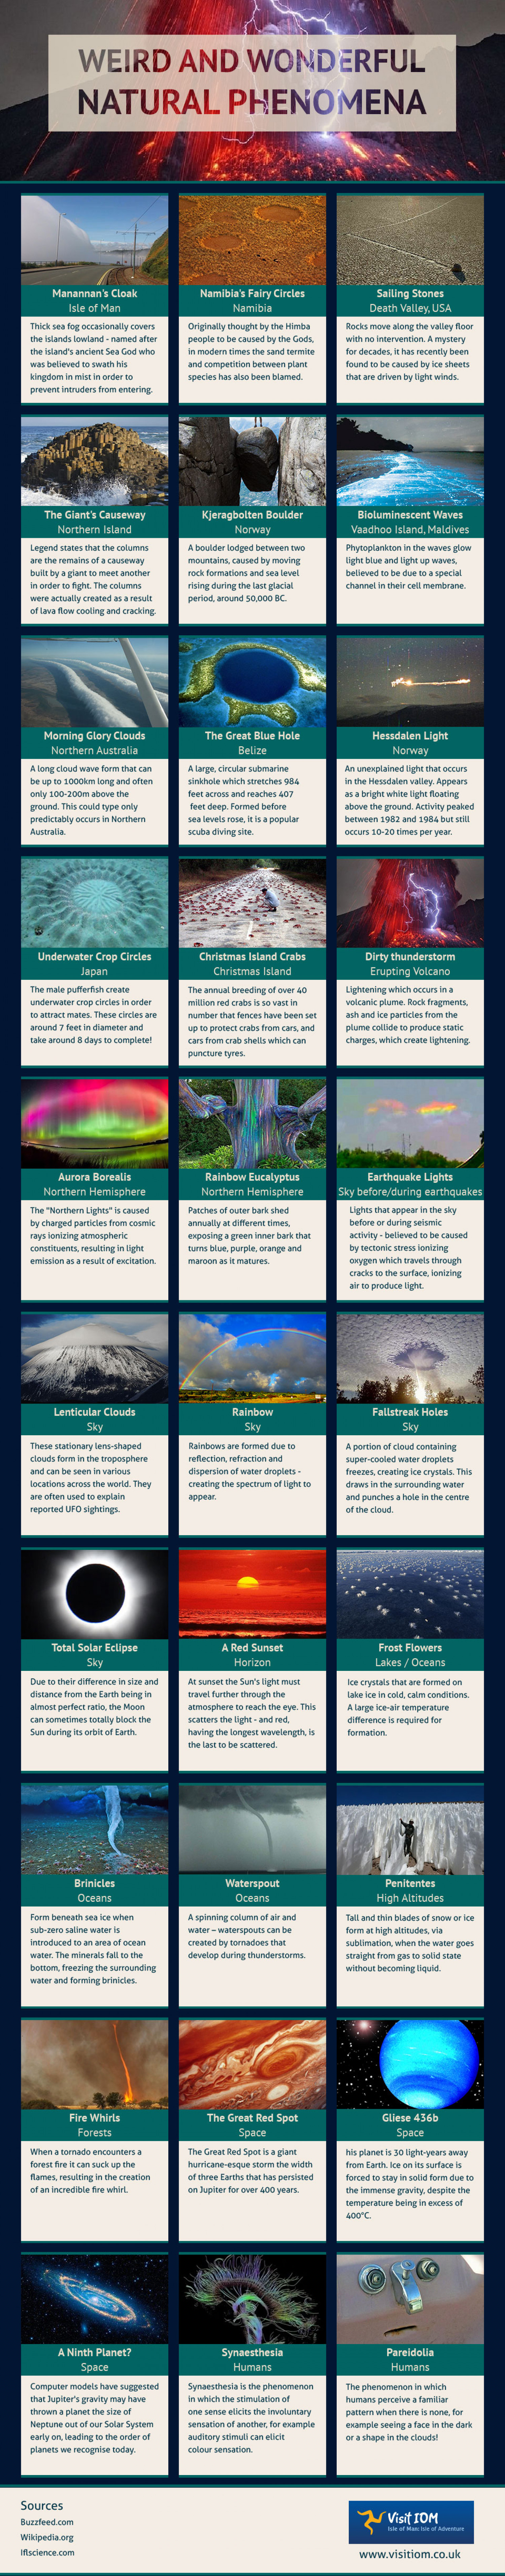 Weird and Wonderful Natural Phenomena Around the World Infographic